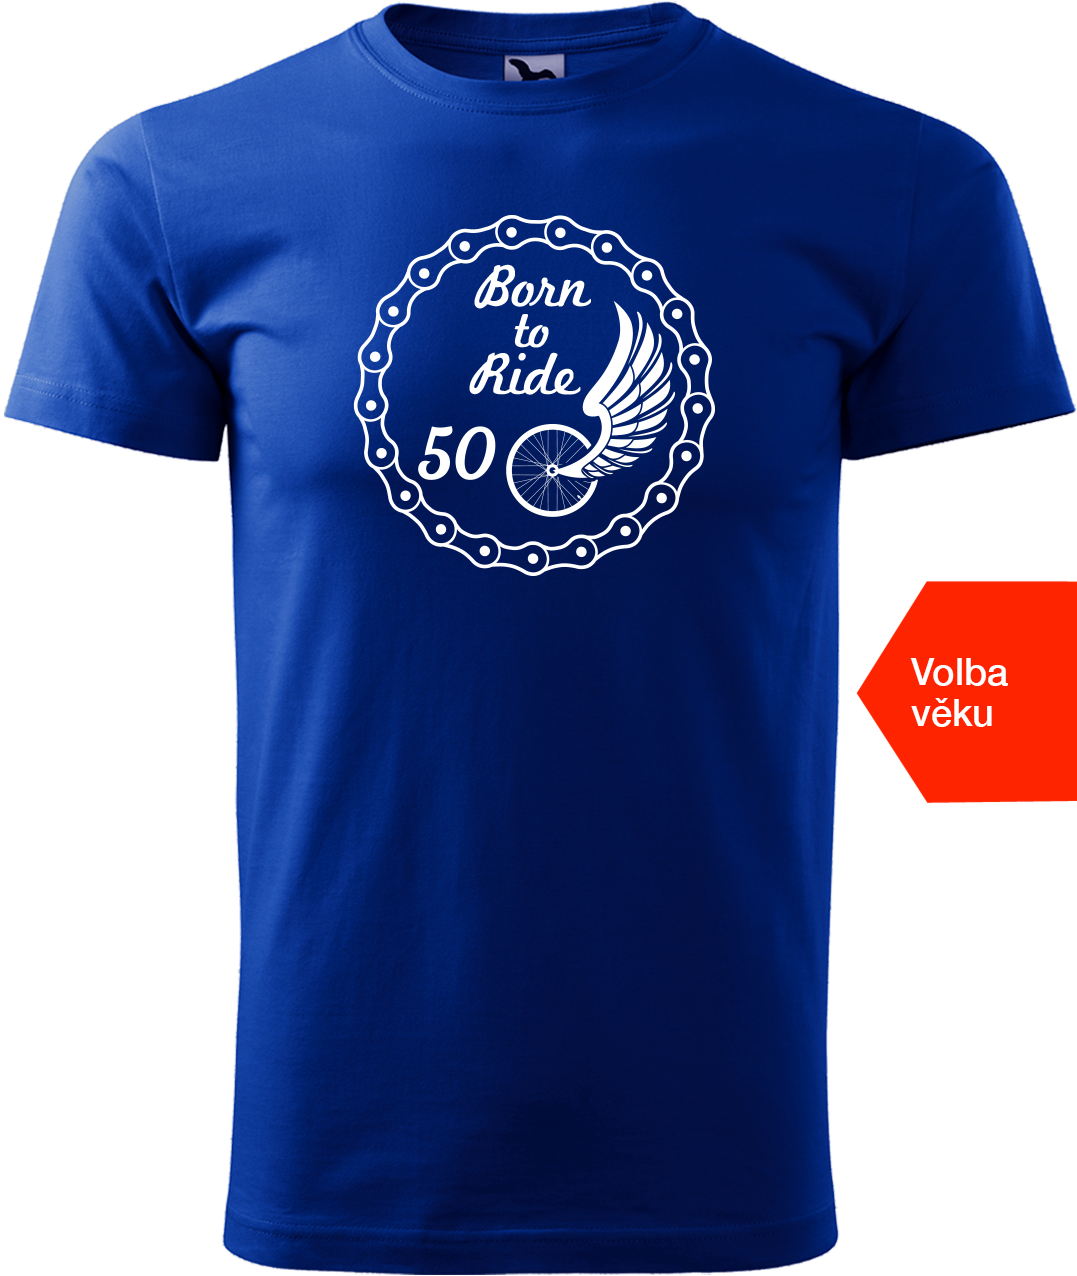 Pánské tričko pro cyklistu s věkem - Born to Ride (wings) Velikost: L, Barva: Královská modrá (05)